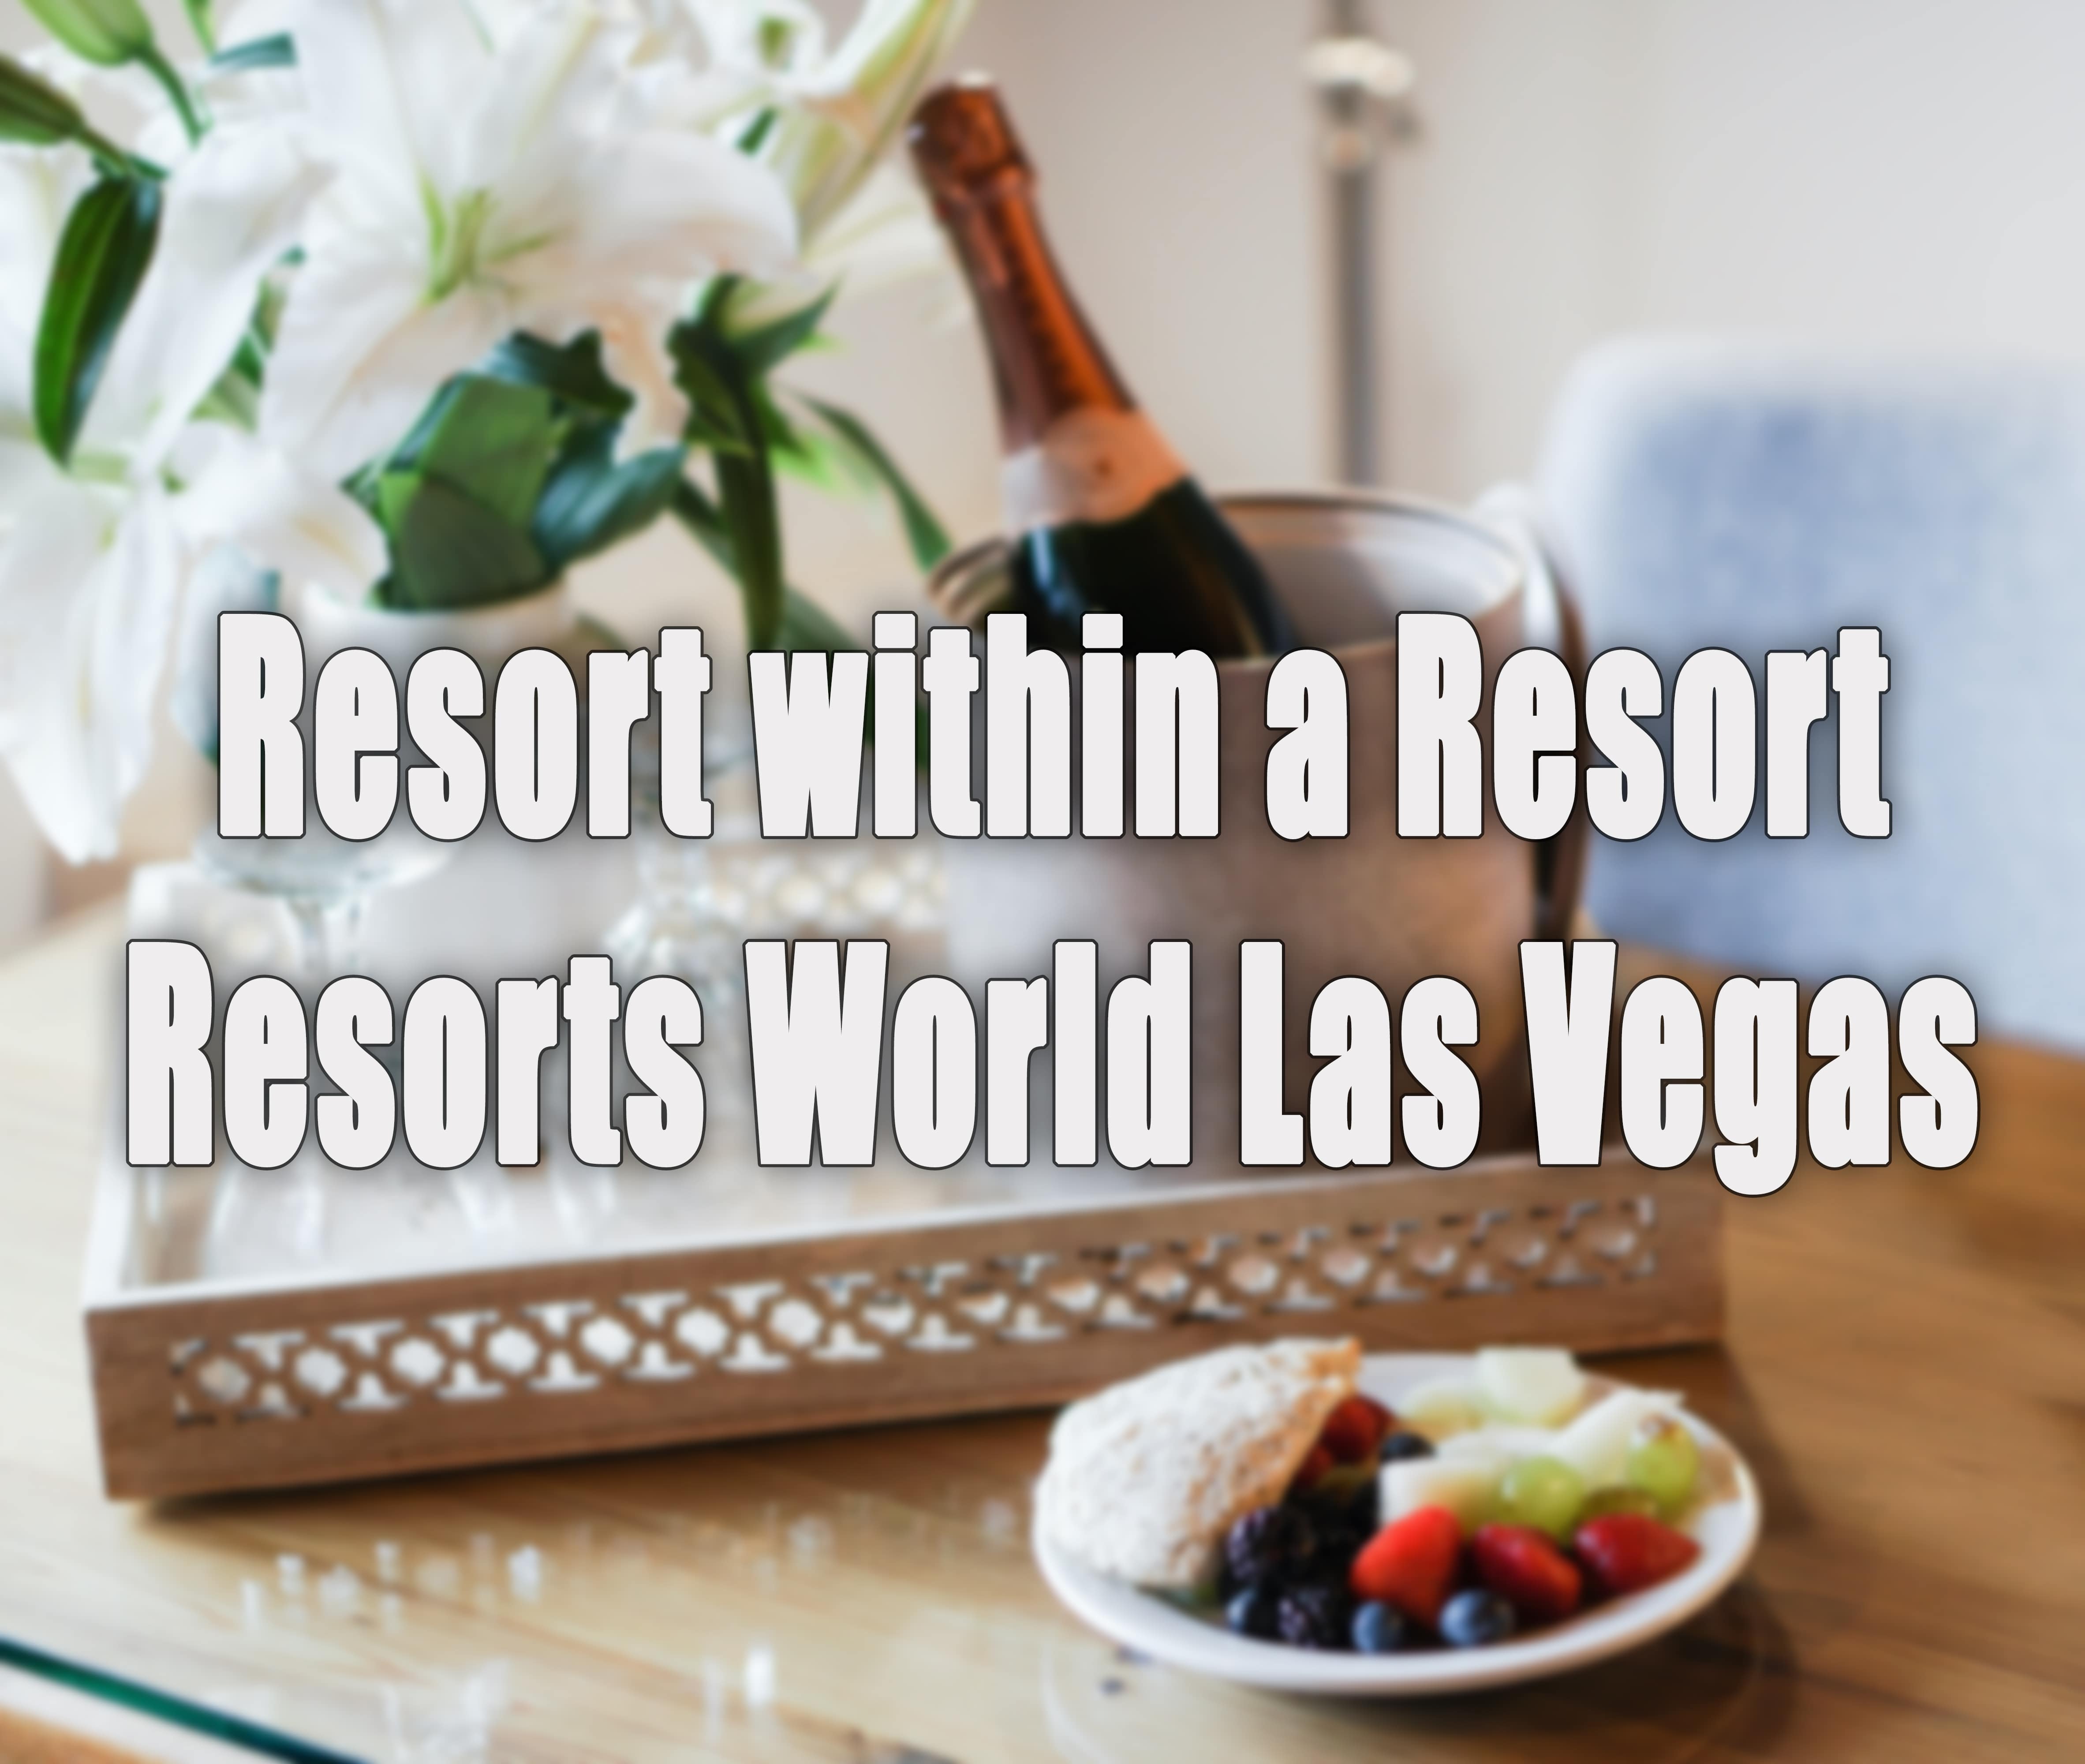 Resort World Las Vegas.jpg